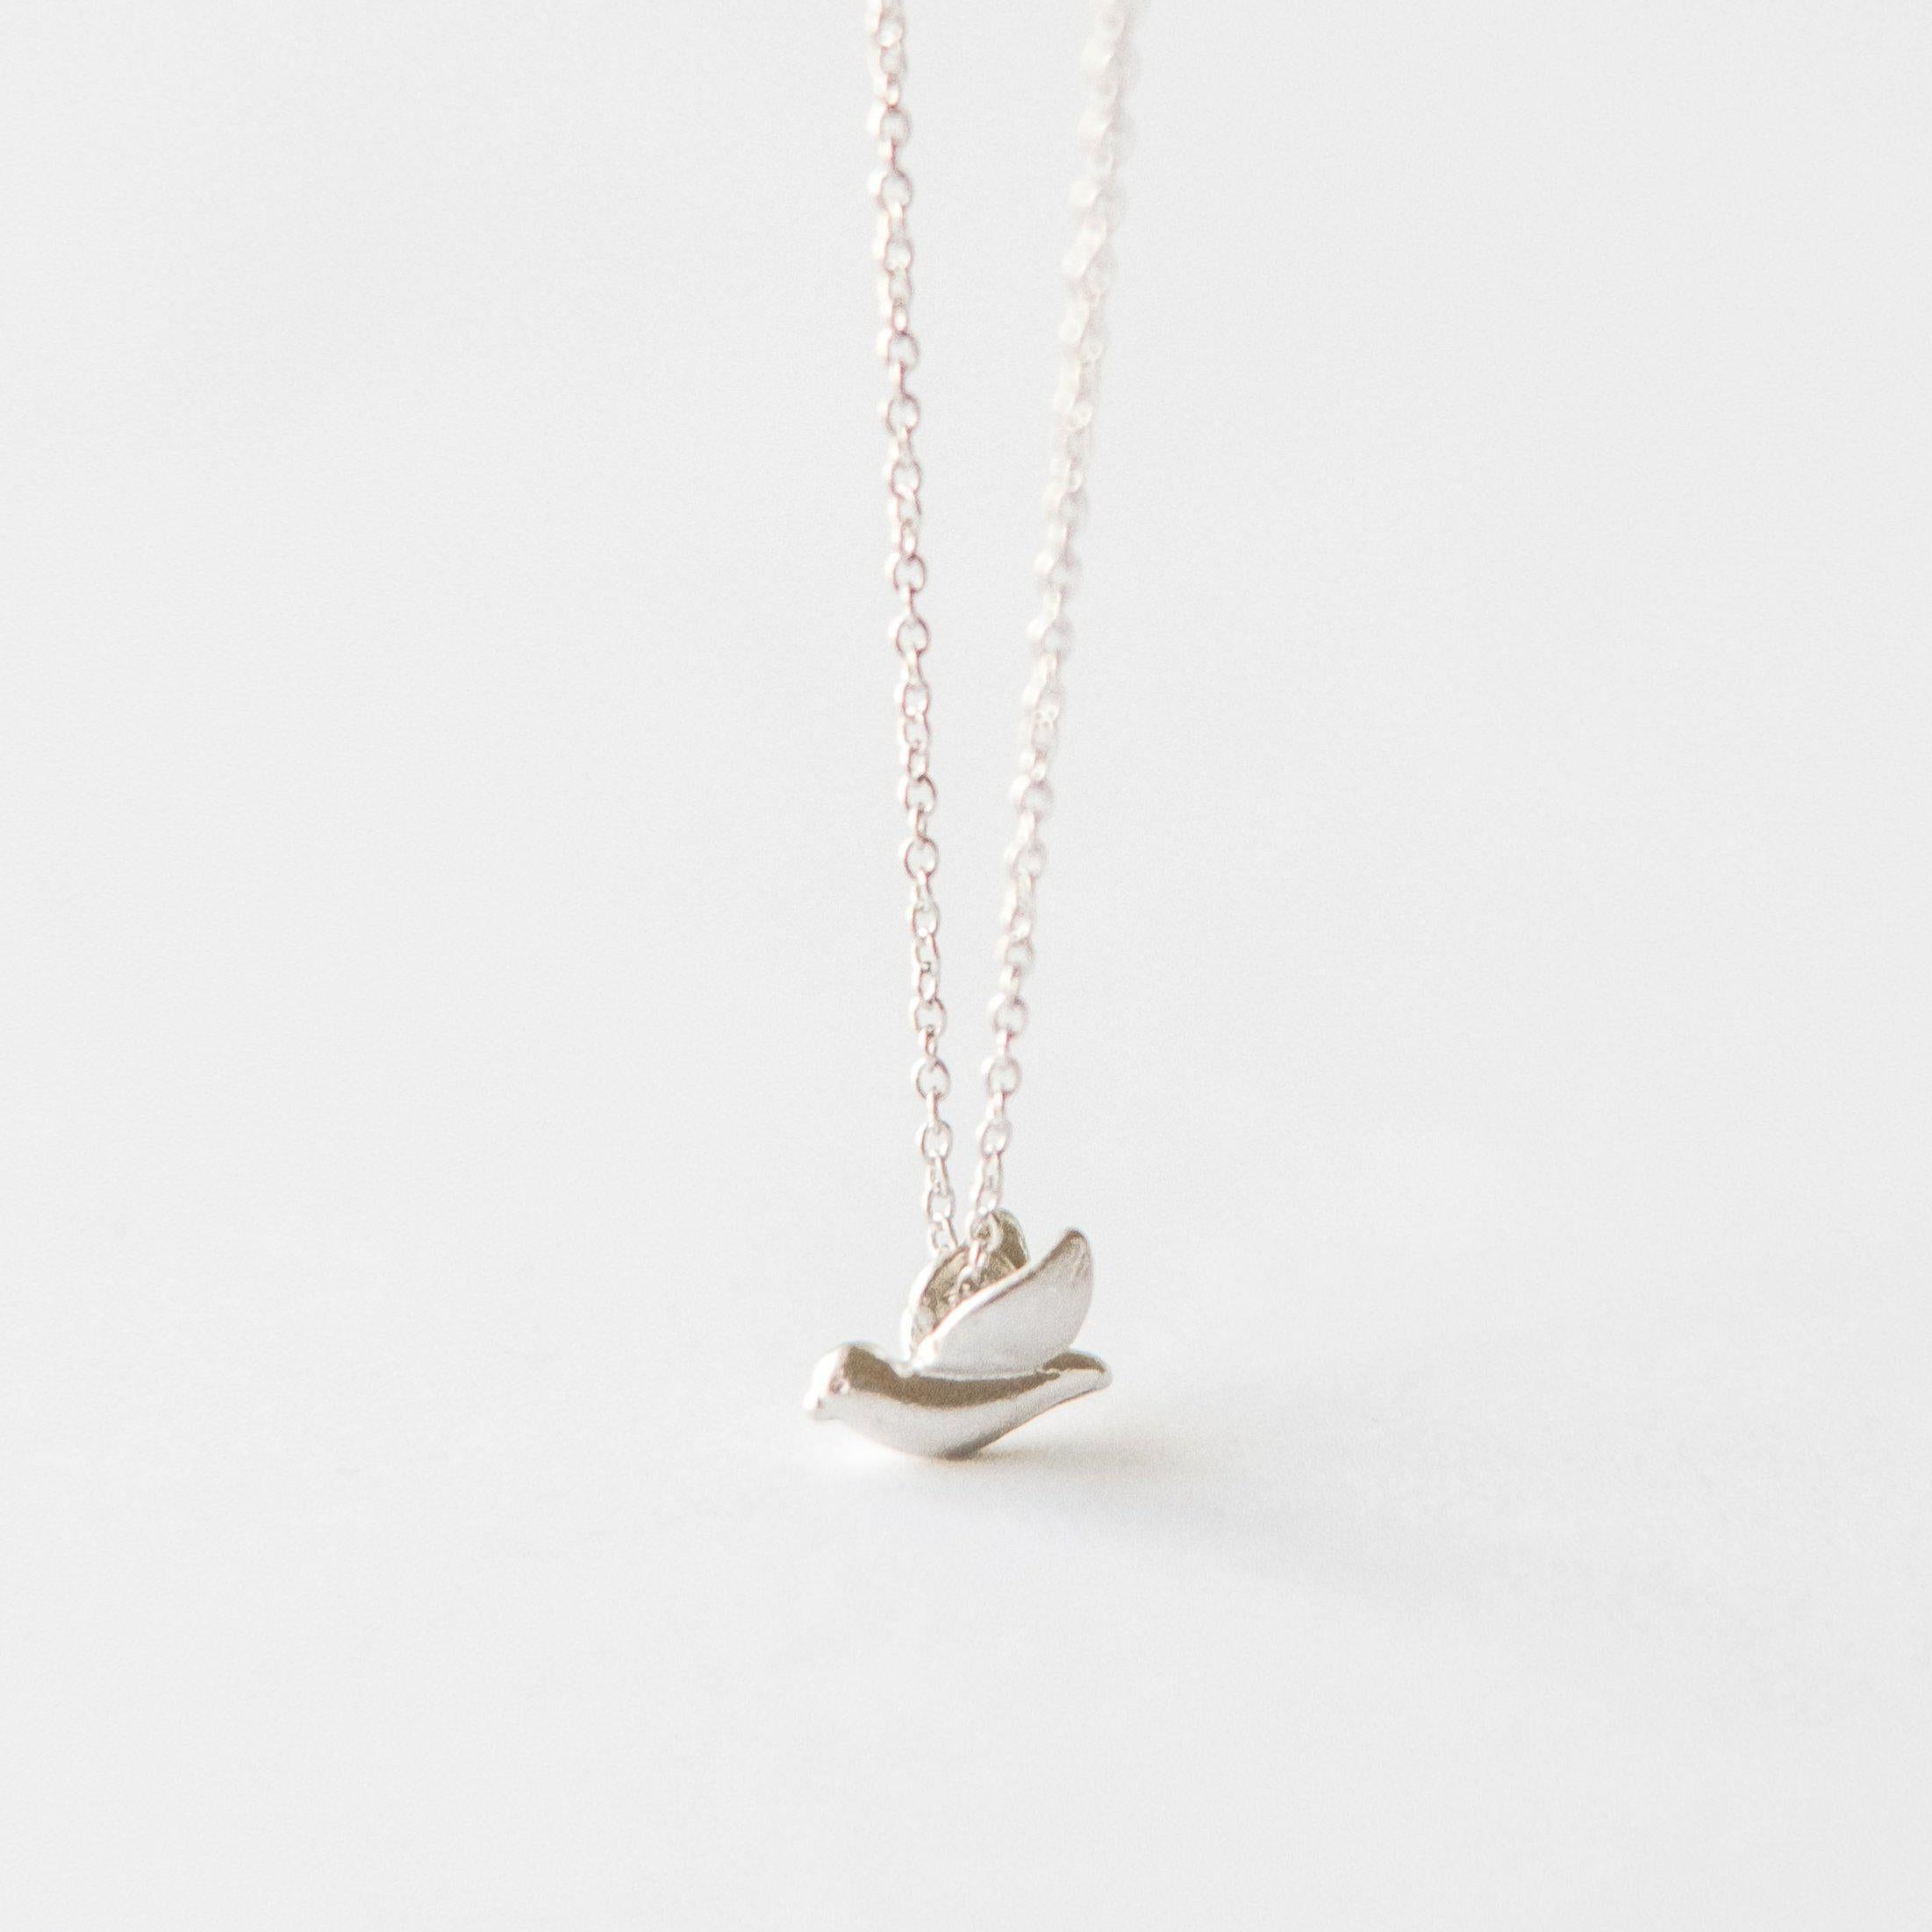 Silver Bird Necklace